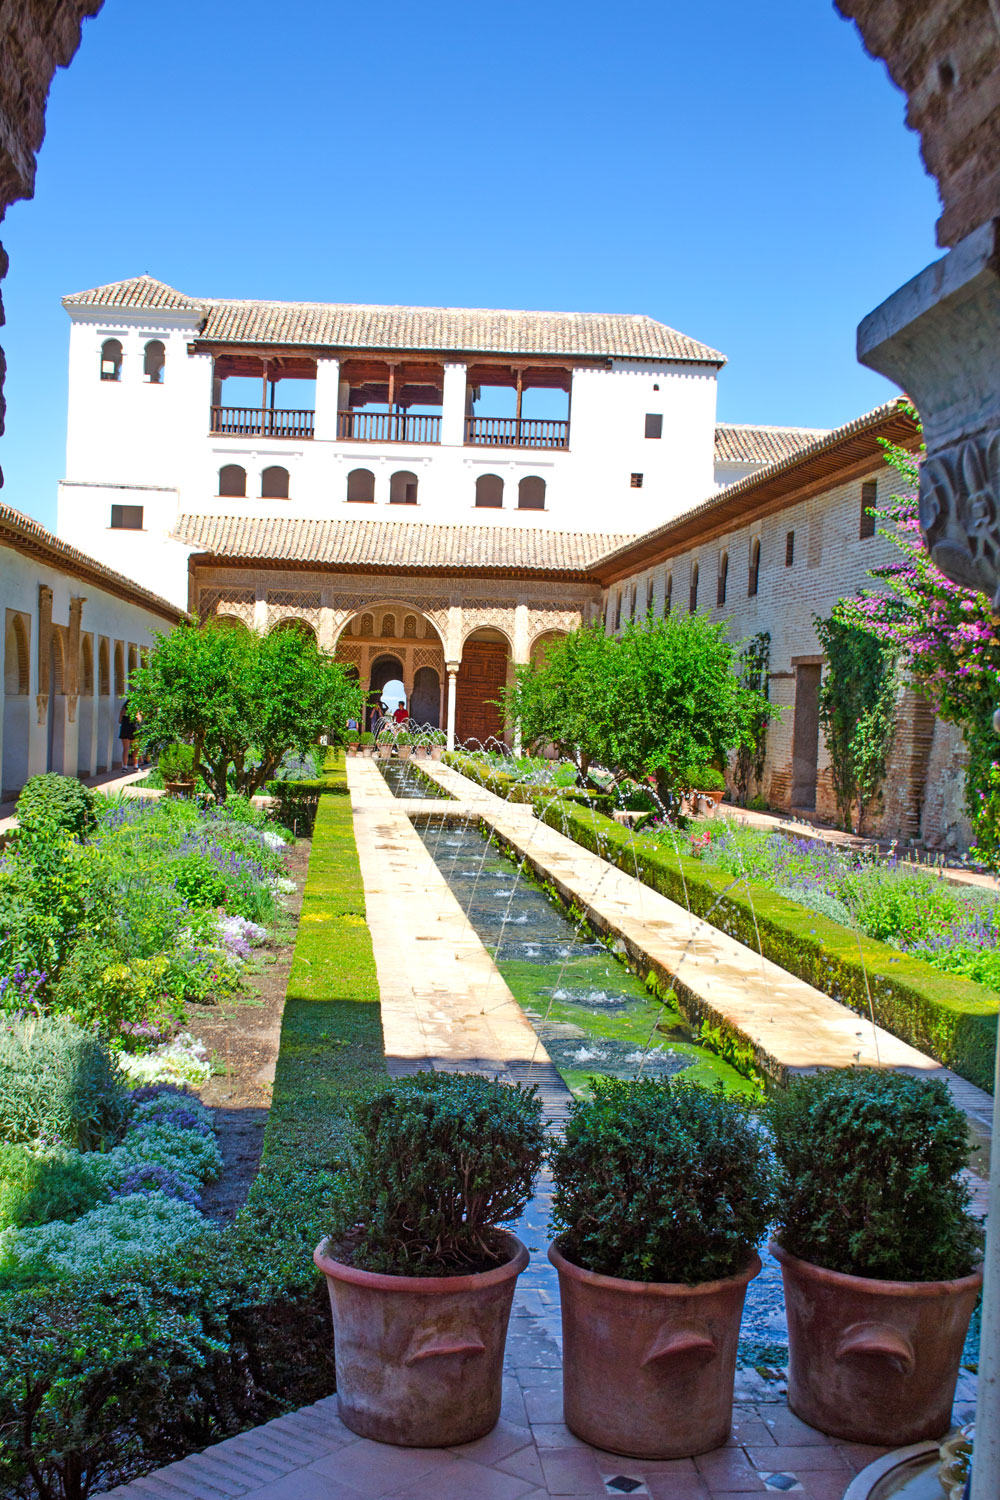 [unbezahlte werbung]La Alhambra - Was man für einen Besuch wissen muss | BLOG JAHRESRÜCKBLICK 2019 | DIE ERFOLGREICHSTEN BEITRÄGE #stylepeacock2019